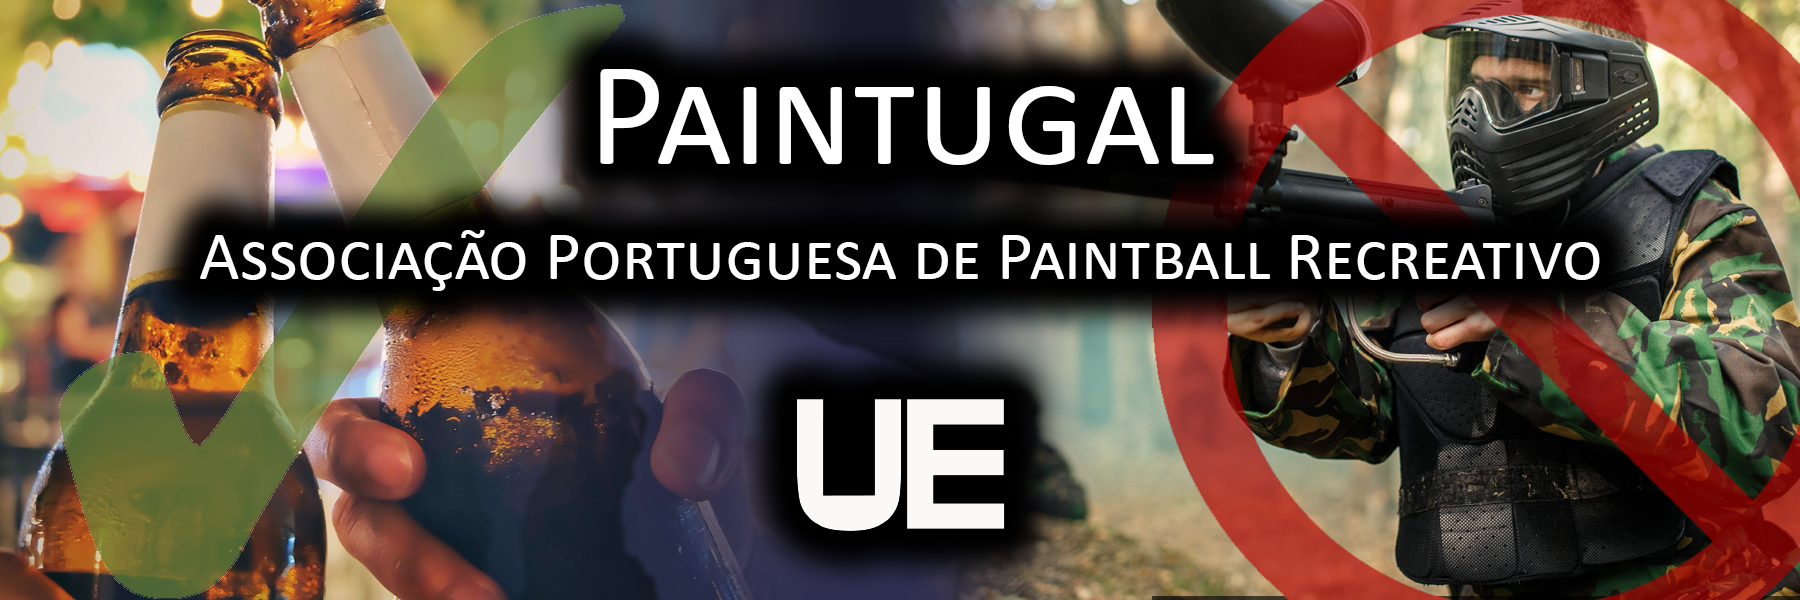 Paintugal | Associação Portuguesa de Paintball Recreativo